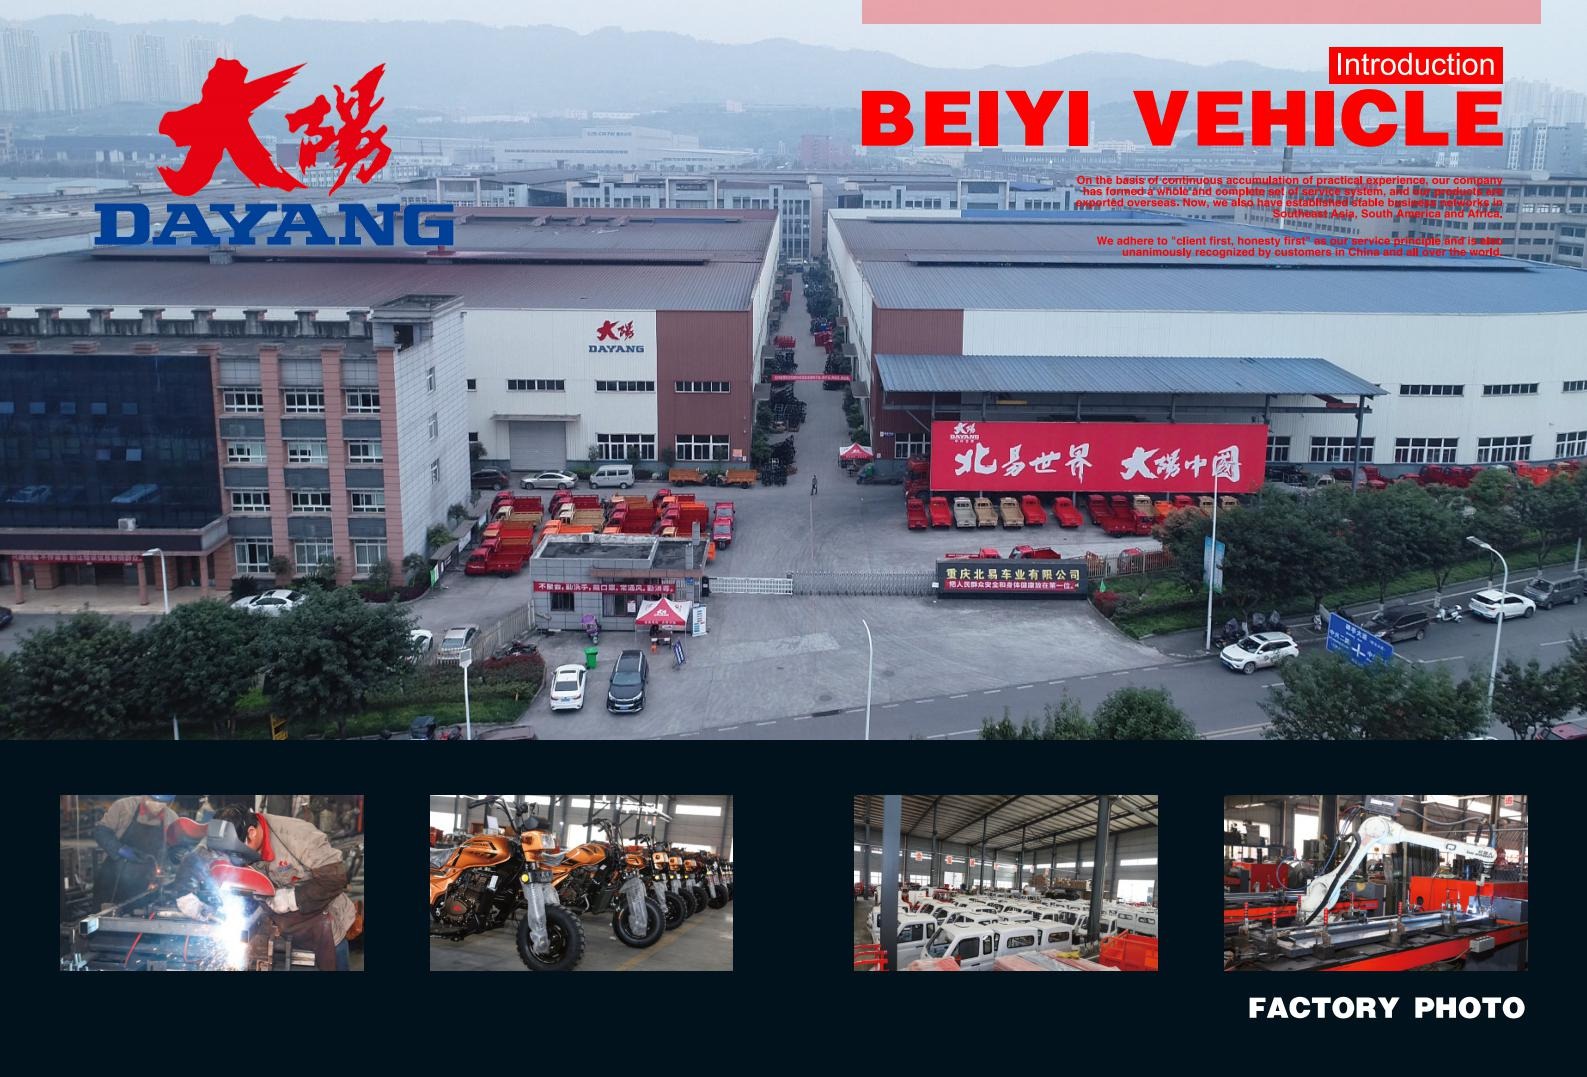 إنتاج ضمان مكافحة الوباء ، خدمة بدون توقف! إعادة ابتكار إنتاج ومبيعات Dayang Vehicle في الربع الأول